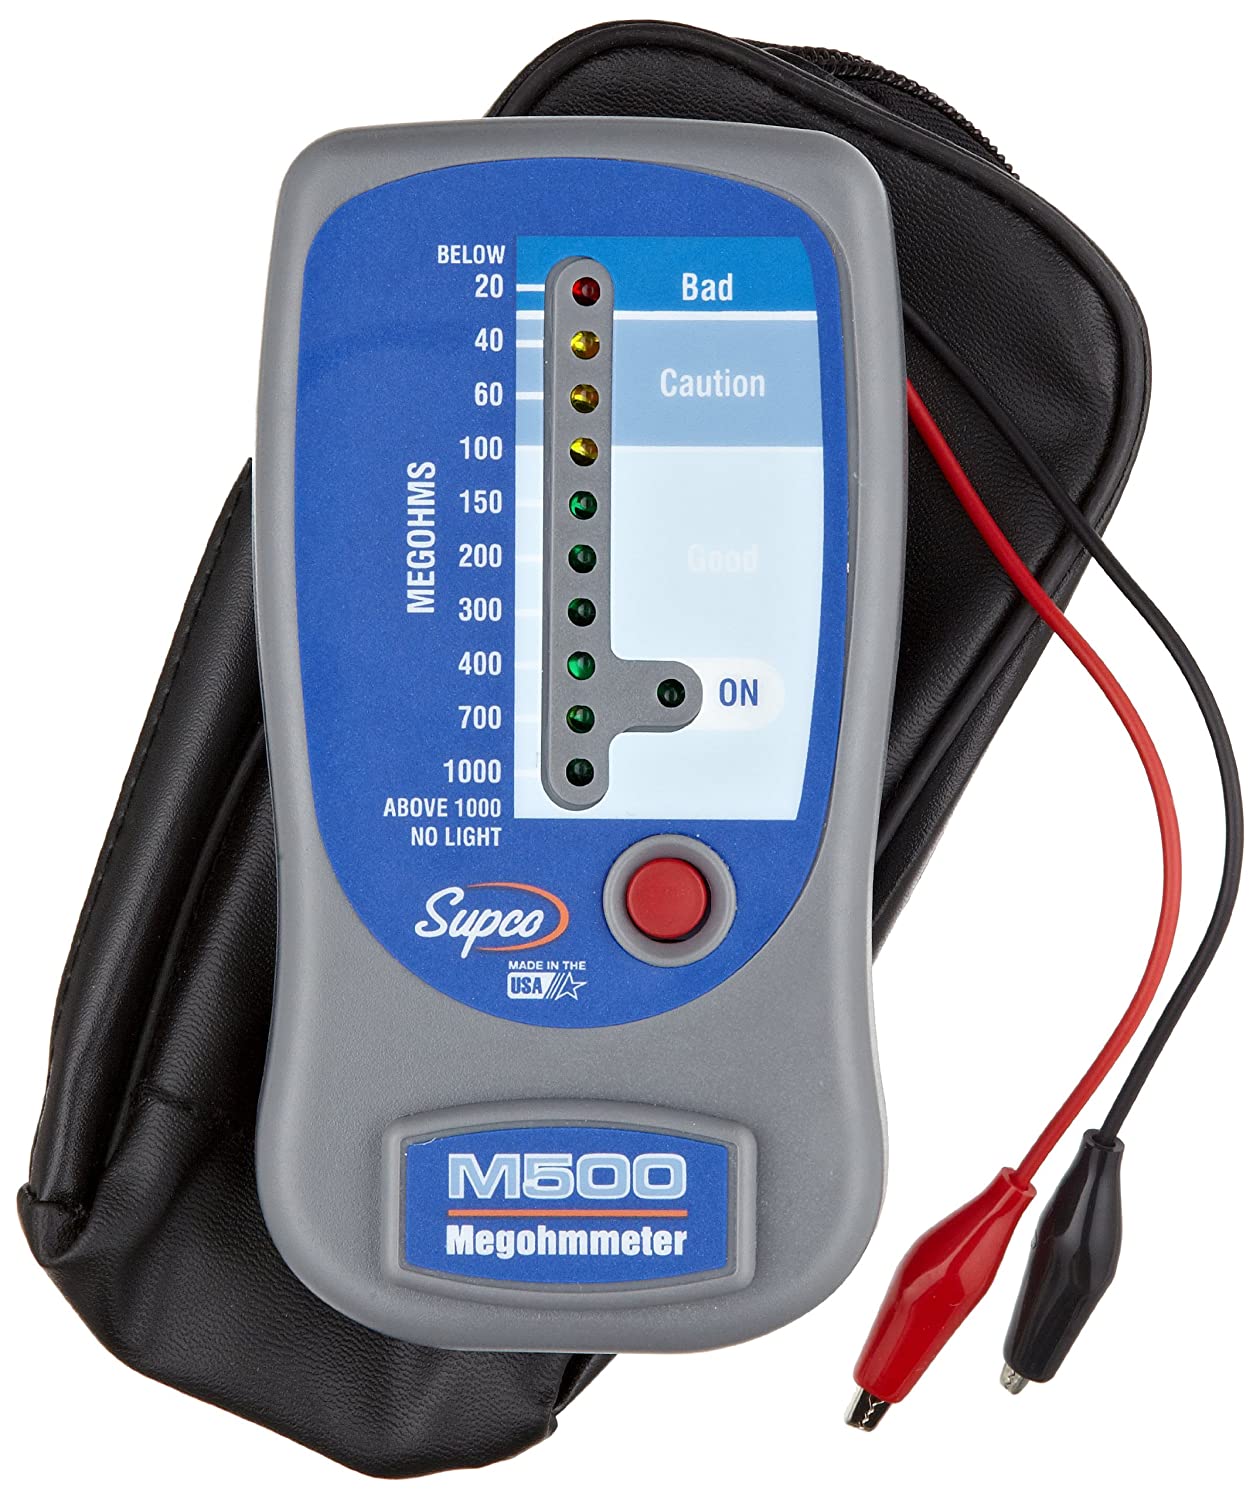 Supco M500 Insulation TesterElectronic Megohmmeter